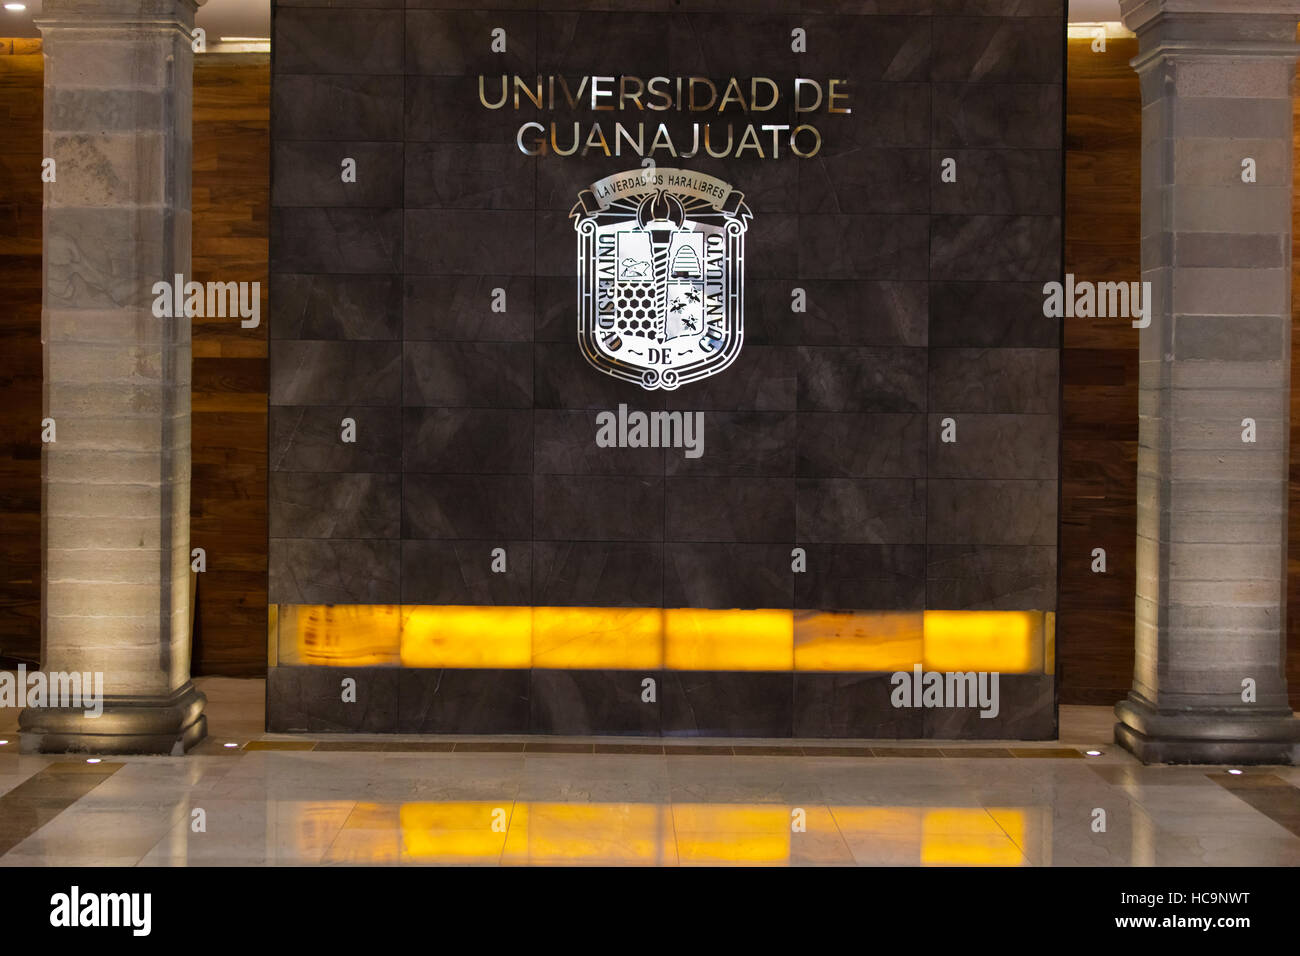 University of Guanajuato the capitol of the state - GUANAJUATO, MEXICO Stock Photo